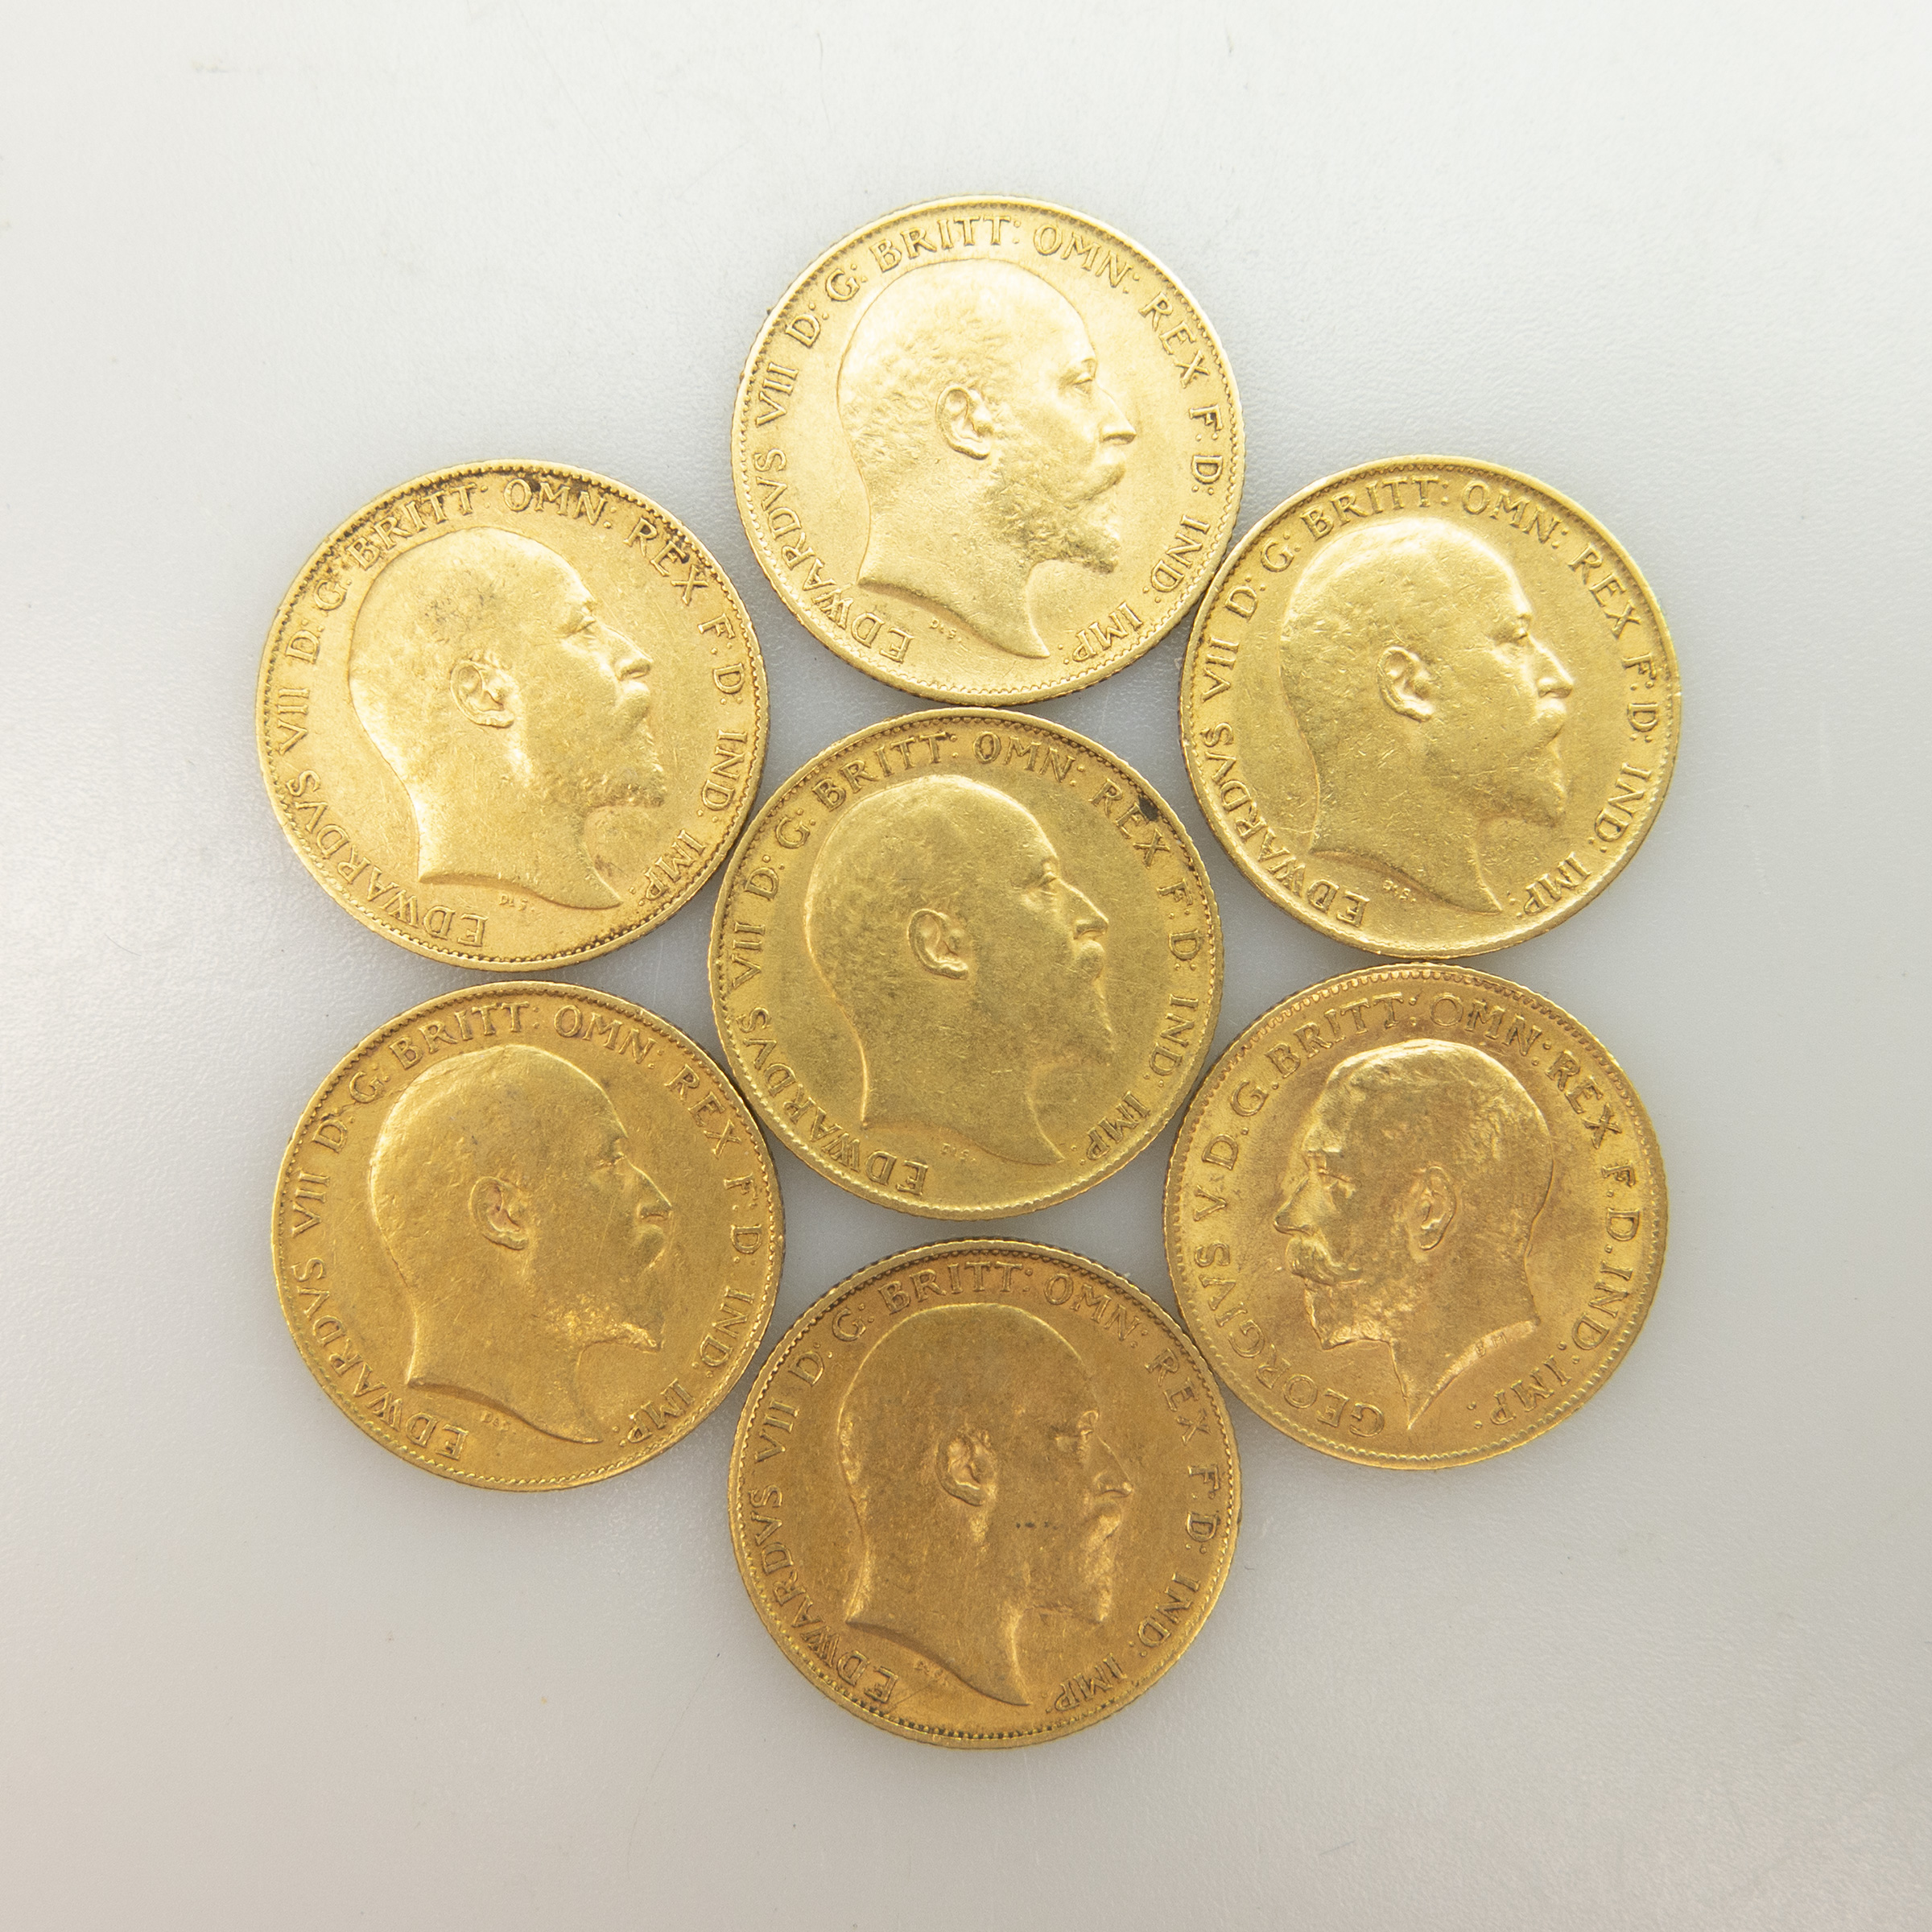 Seven British Gold Half Sovereigns